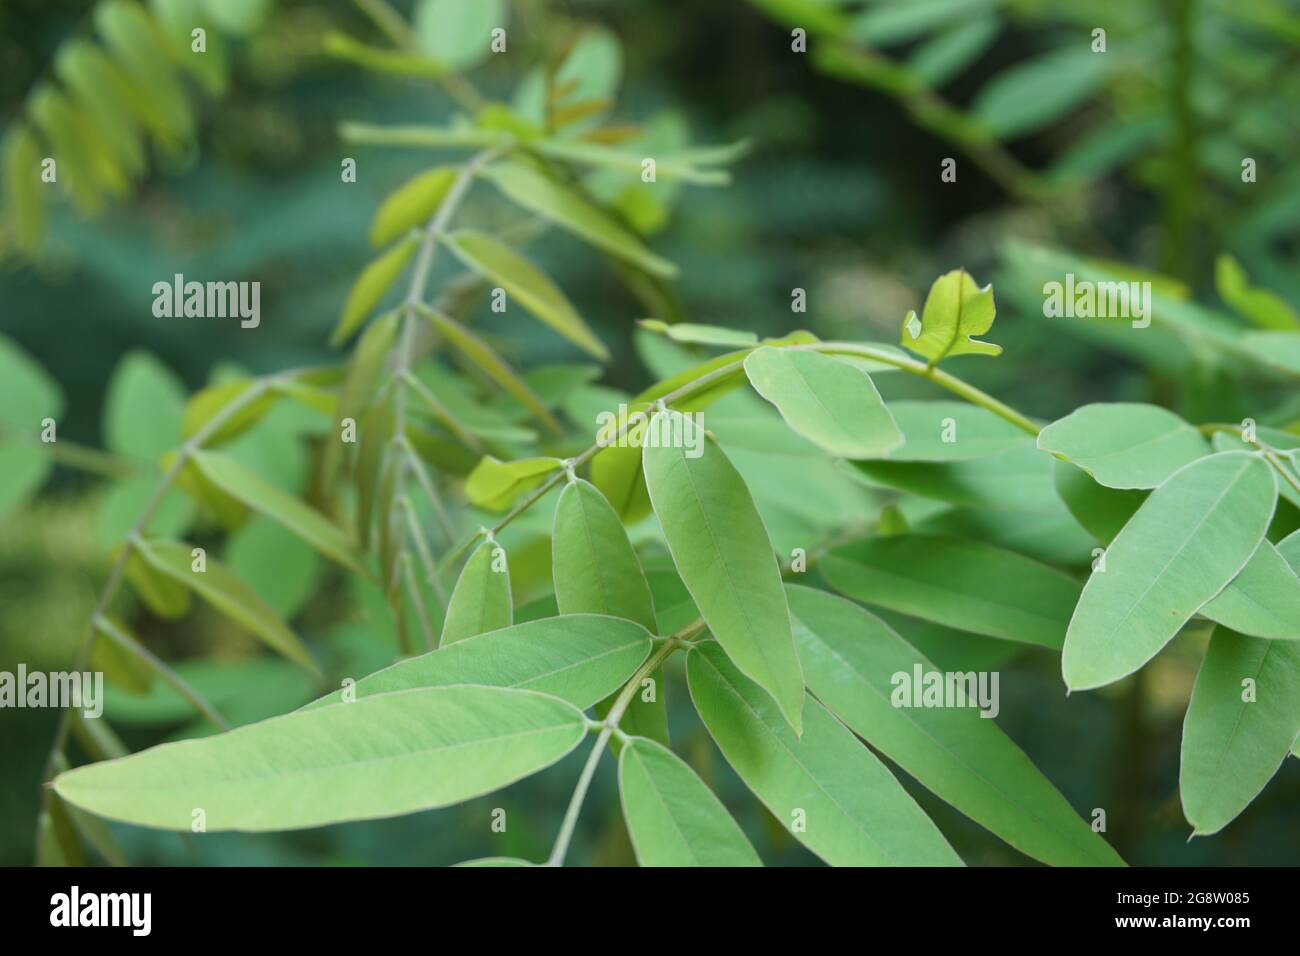 Senna siamea (auch bekannt als siamesische Cassia, Kassodenbaum, Kassettenbaum, Kassettenbaum) mit natürlichem Hintergrund Stockfoto